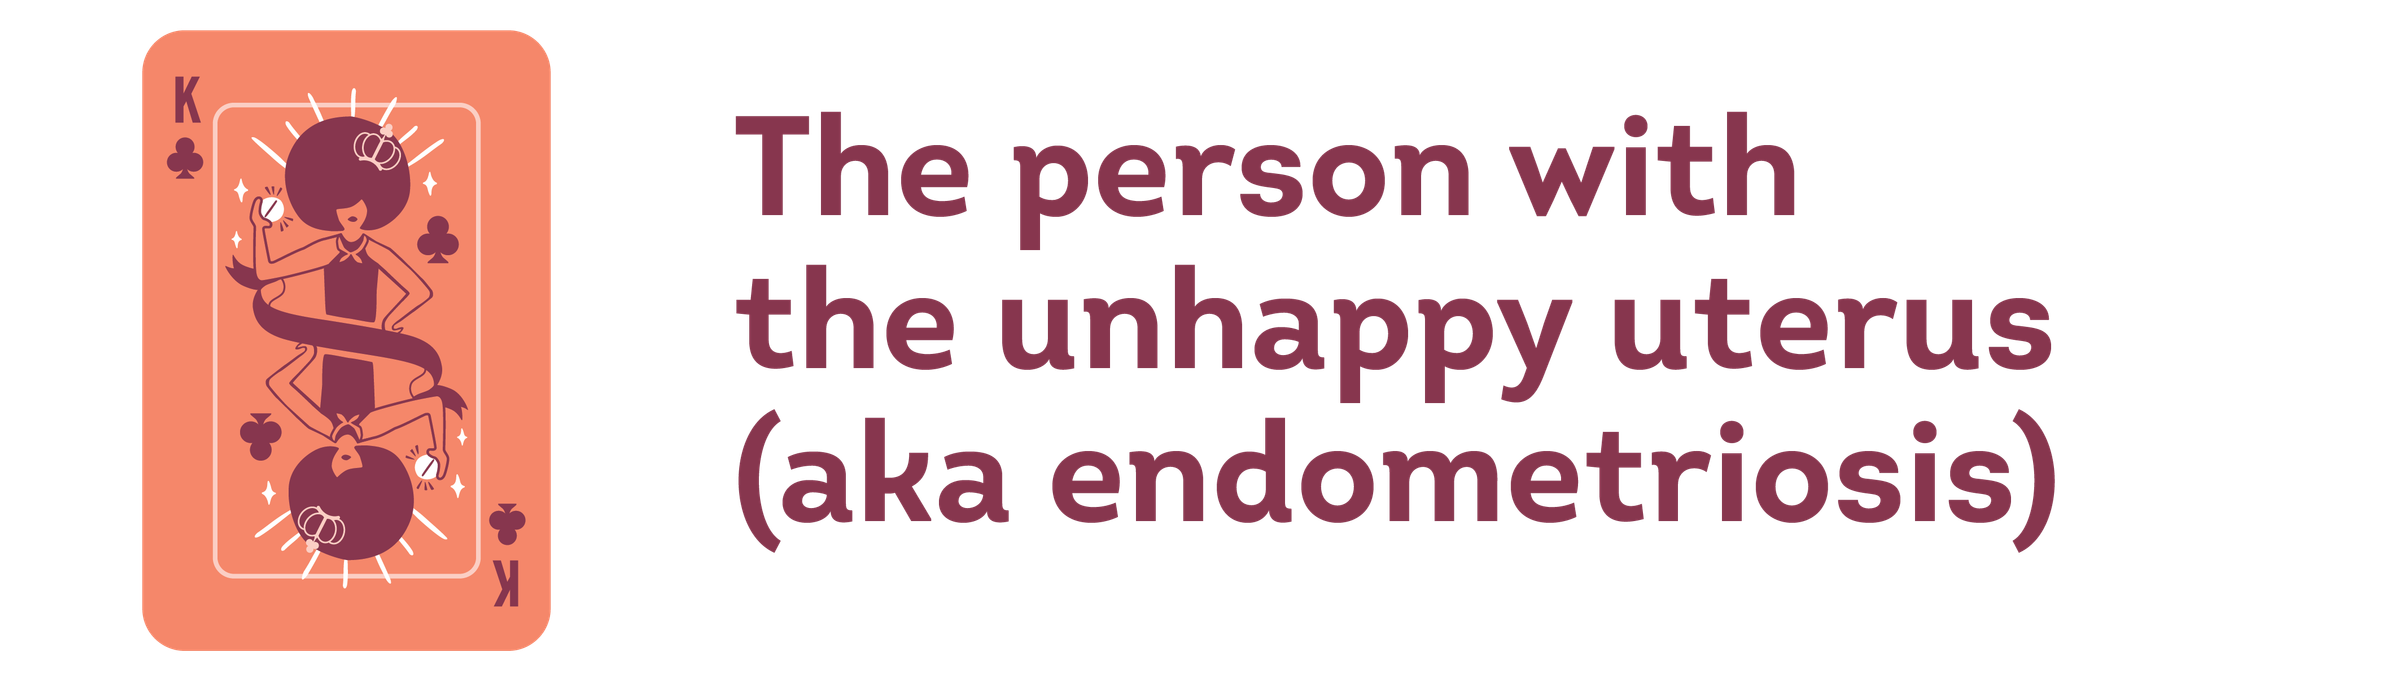 the person with the unhappy uterus (aka endometriosis)